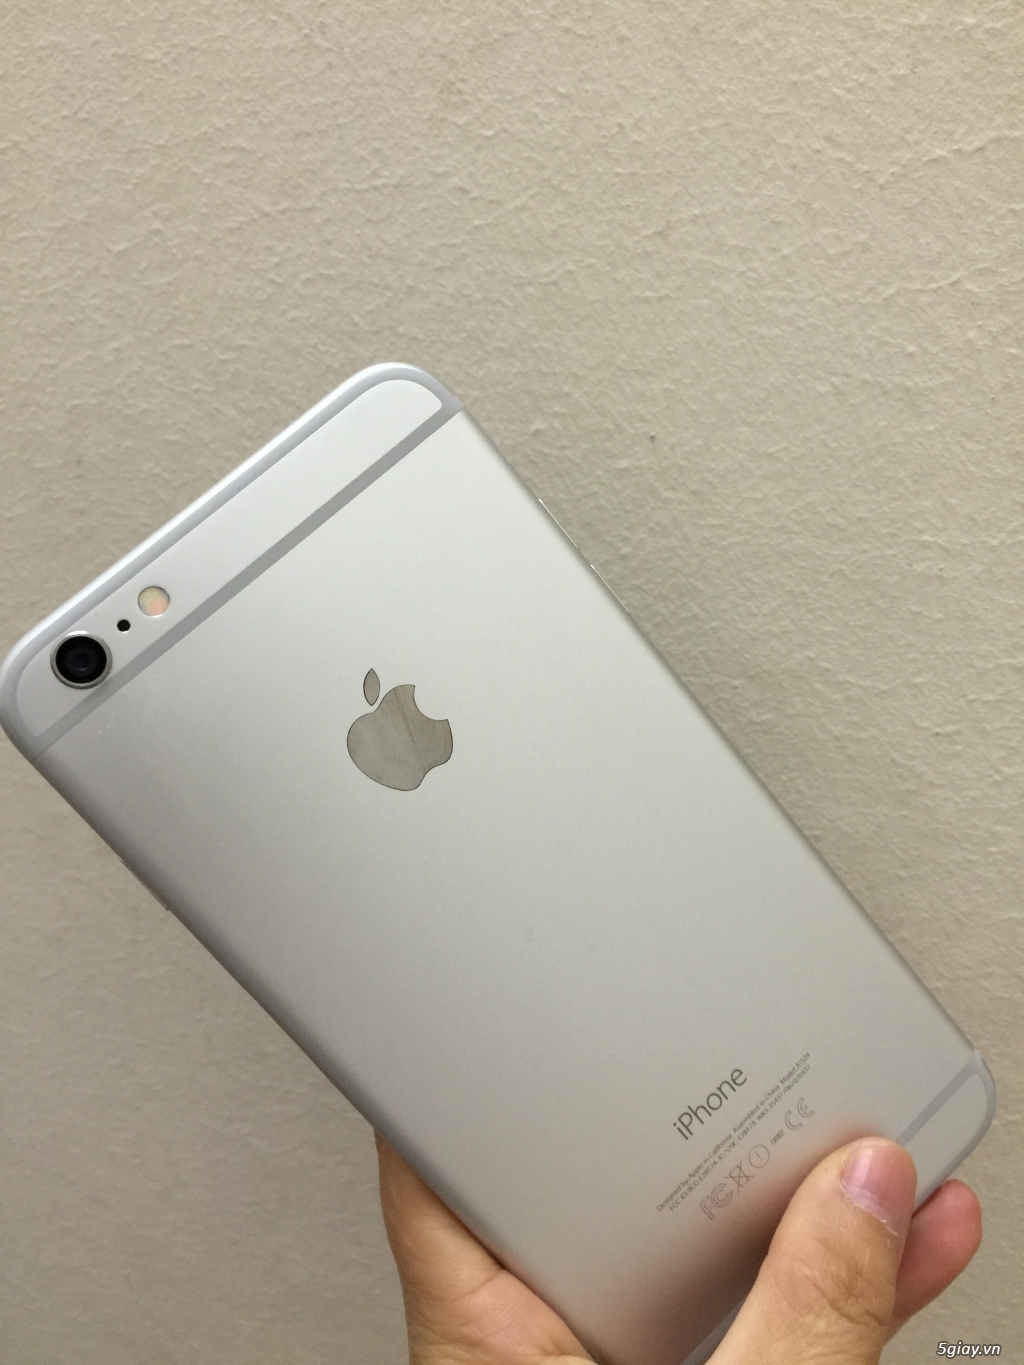 iPhone 6 plus 64G Silver lock Nhật đẹp keng giá tốt - 1